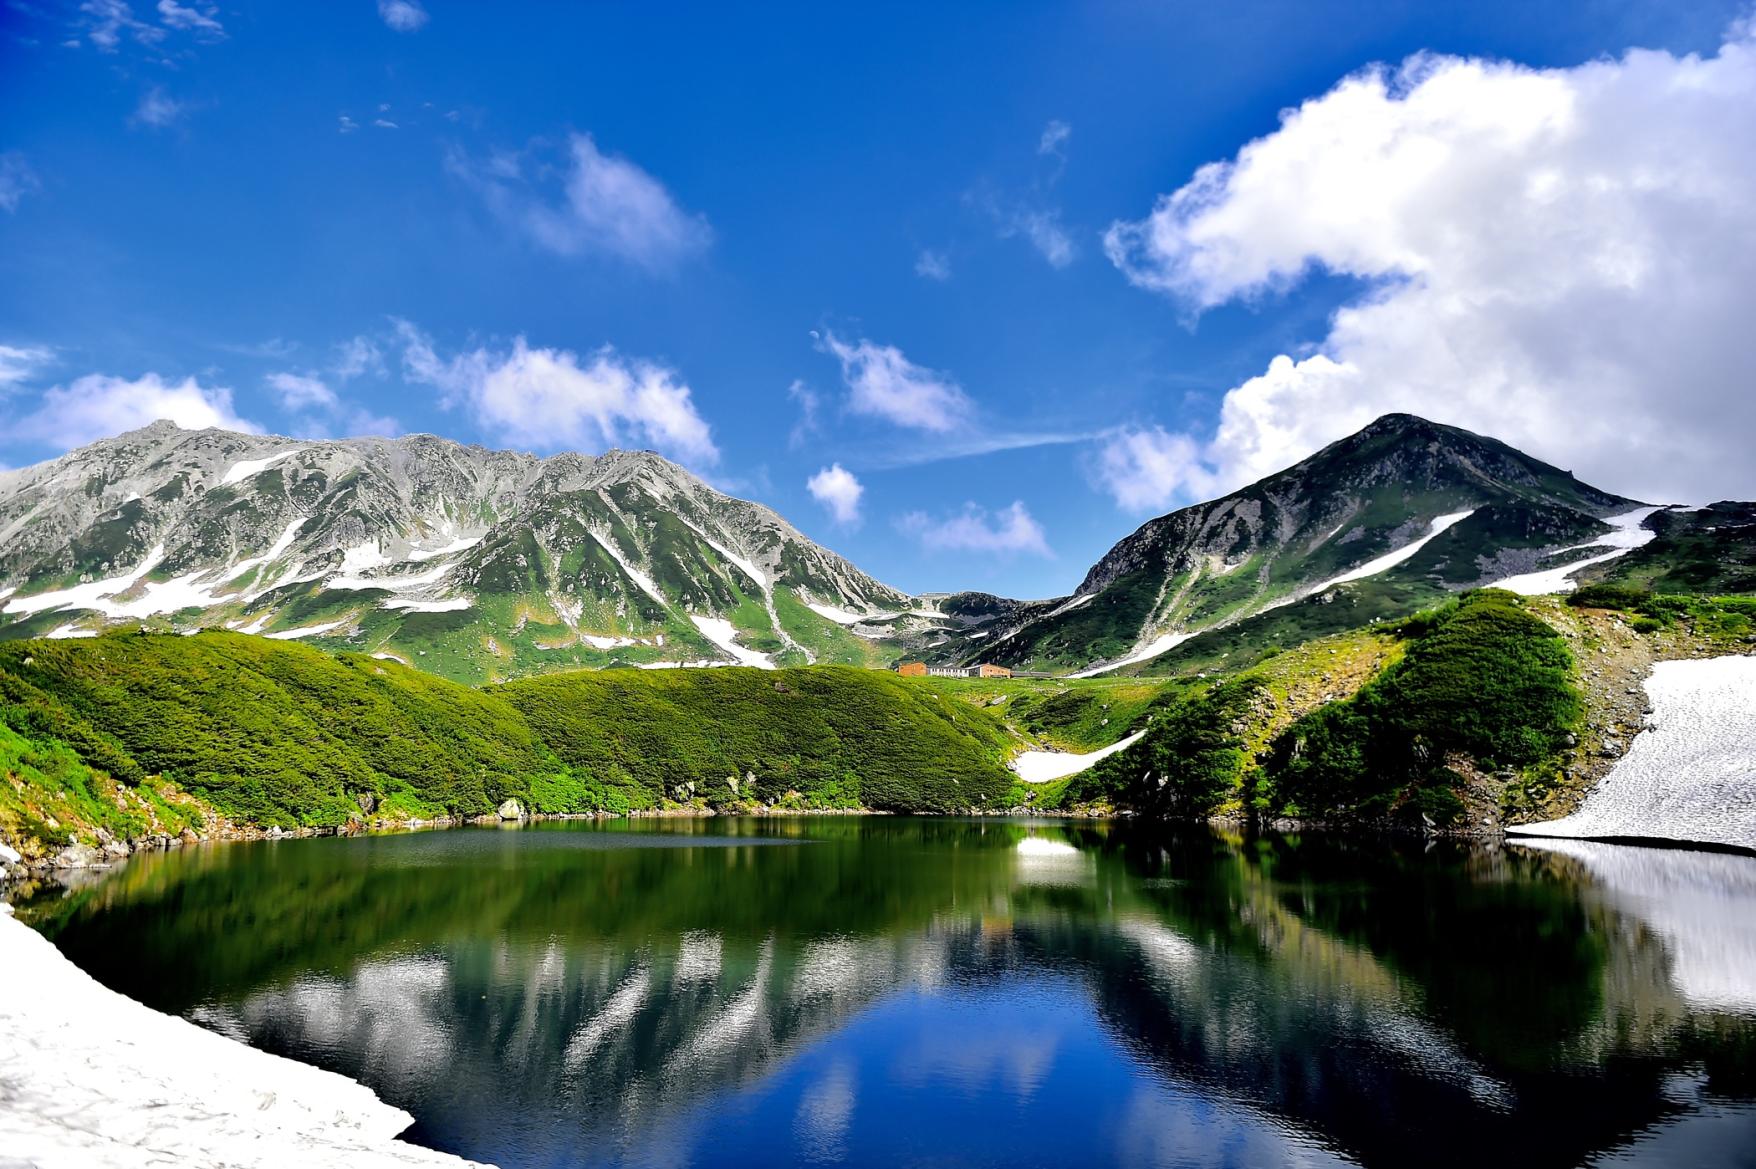 เส้นทางแอลป์ทาเตยามะคุโรเบะ: การเดินทางข้ามเทือกเขาแอลป์ญี่ปุ่นตอนเหนือที่น่าตื่นตาตื่นใจ